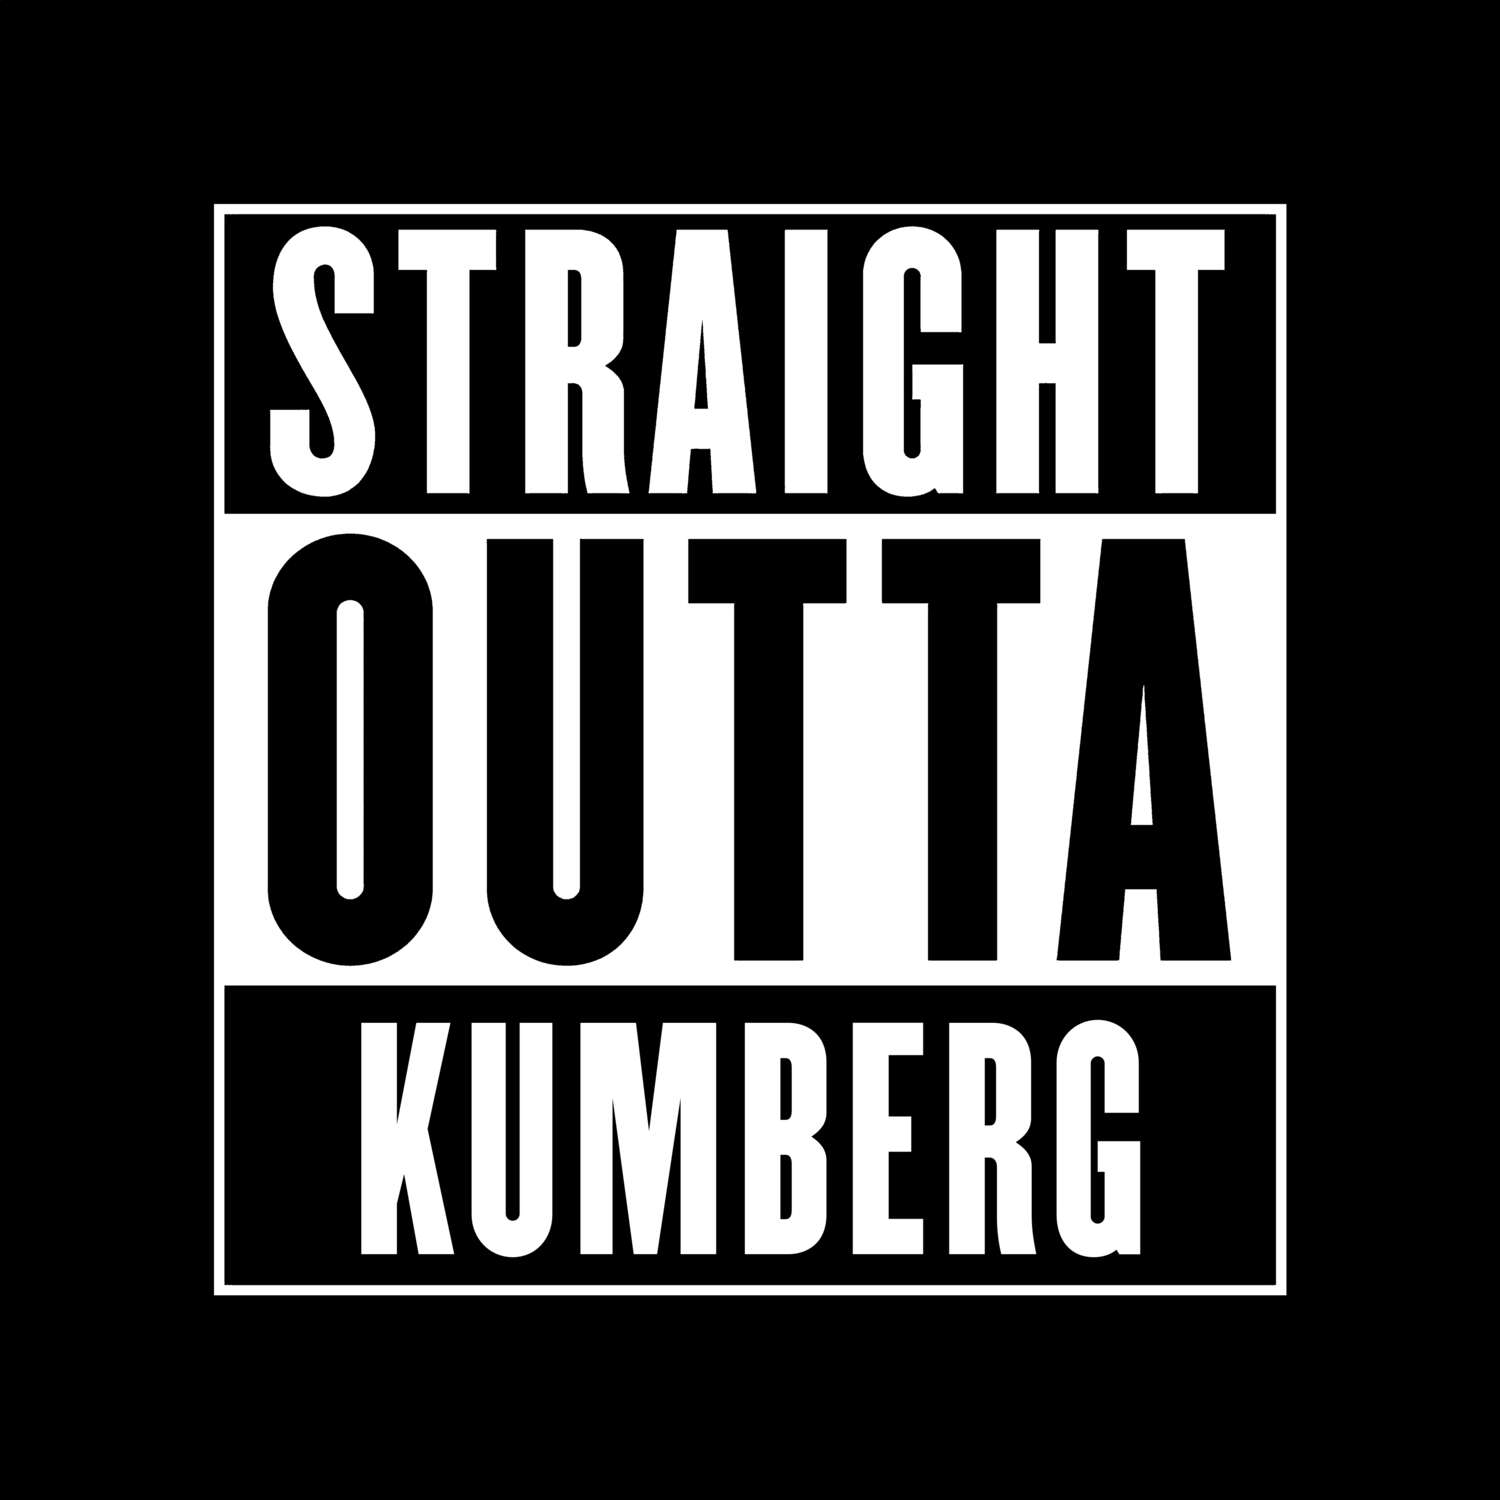 Kumberg T-Shirt »Straight Outta«